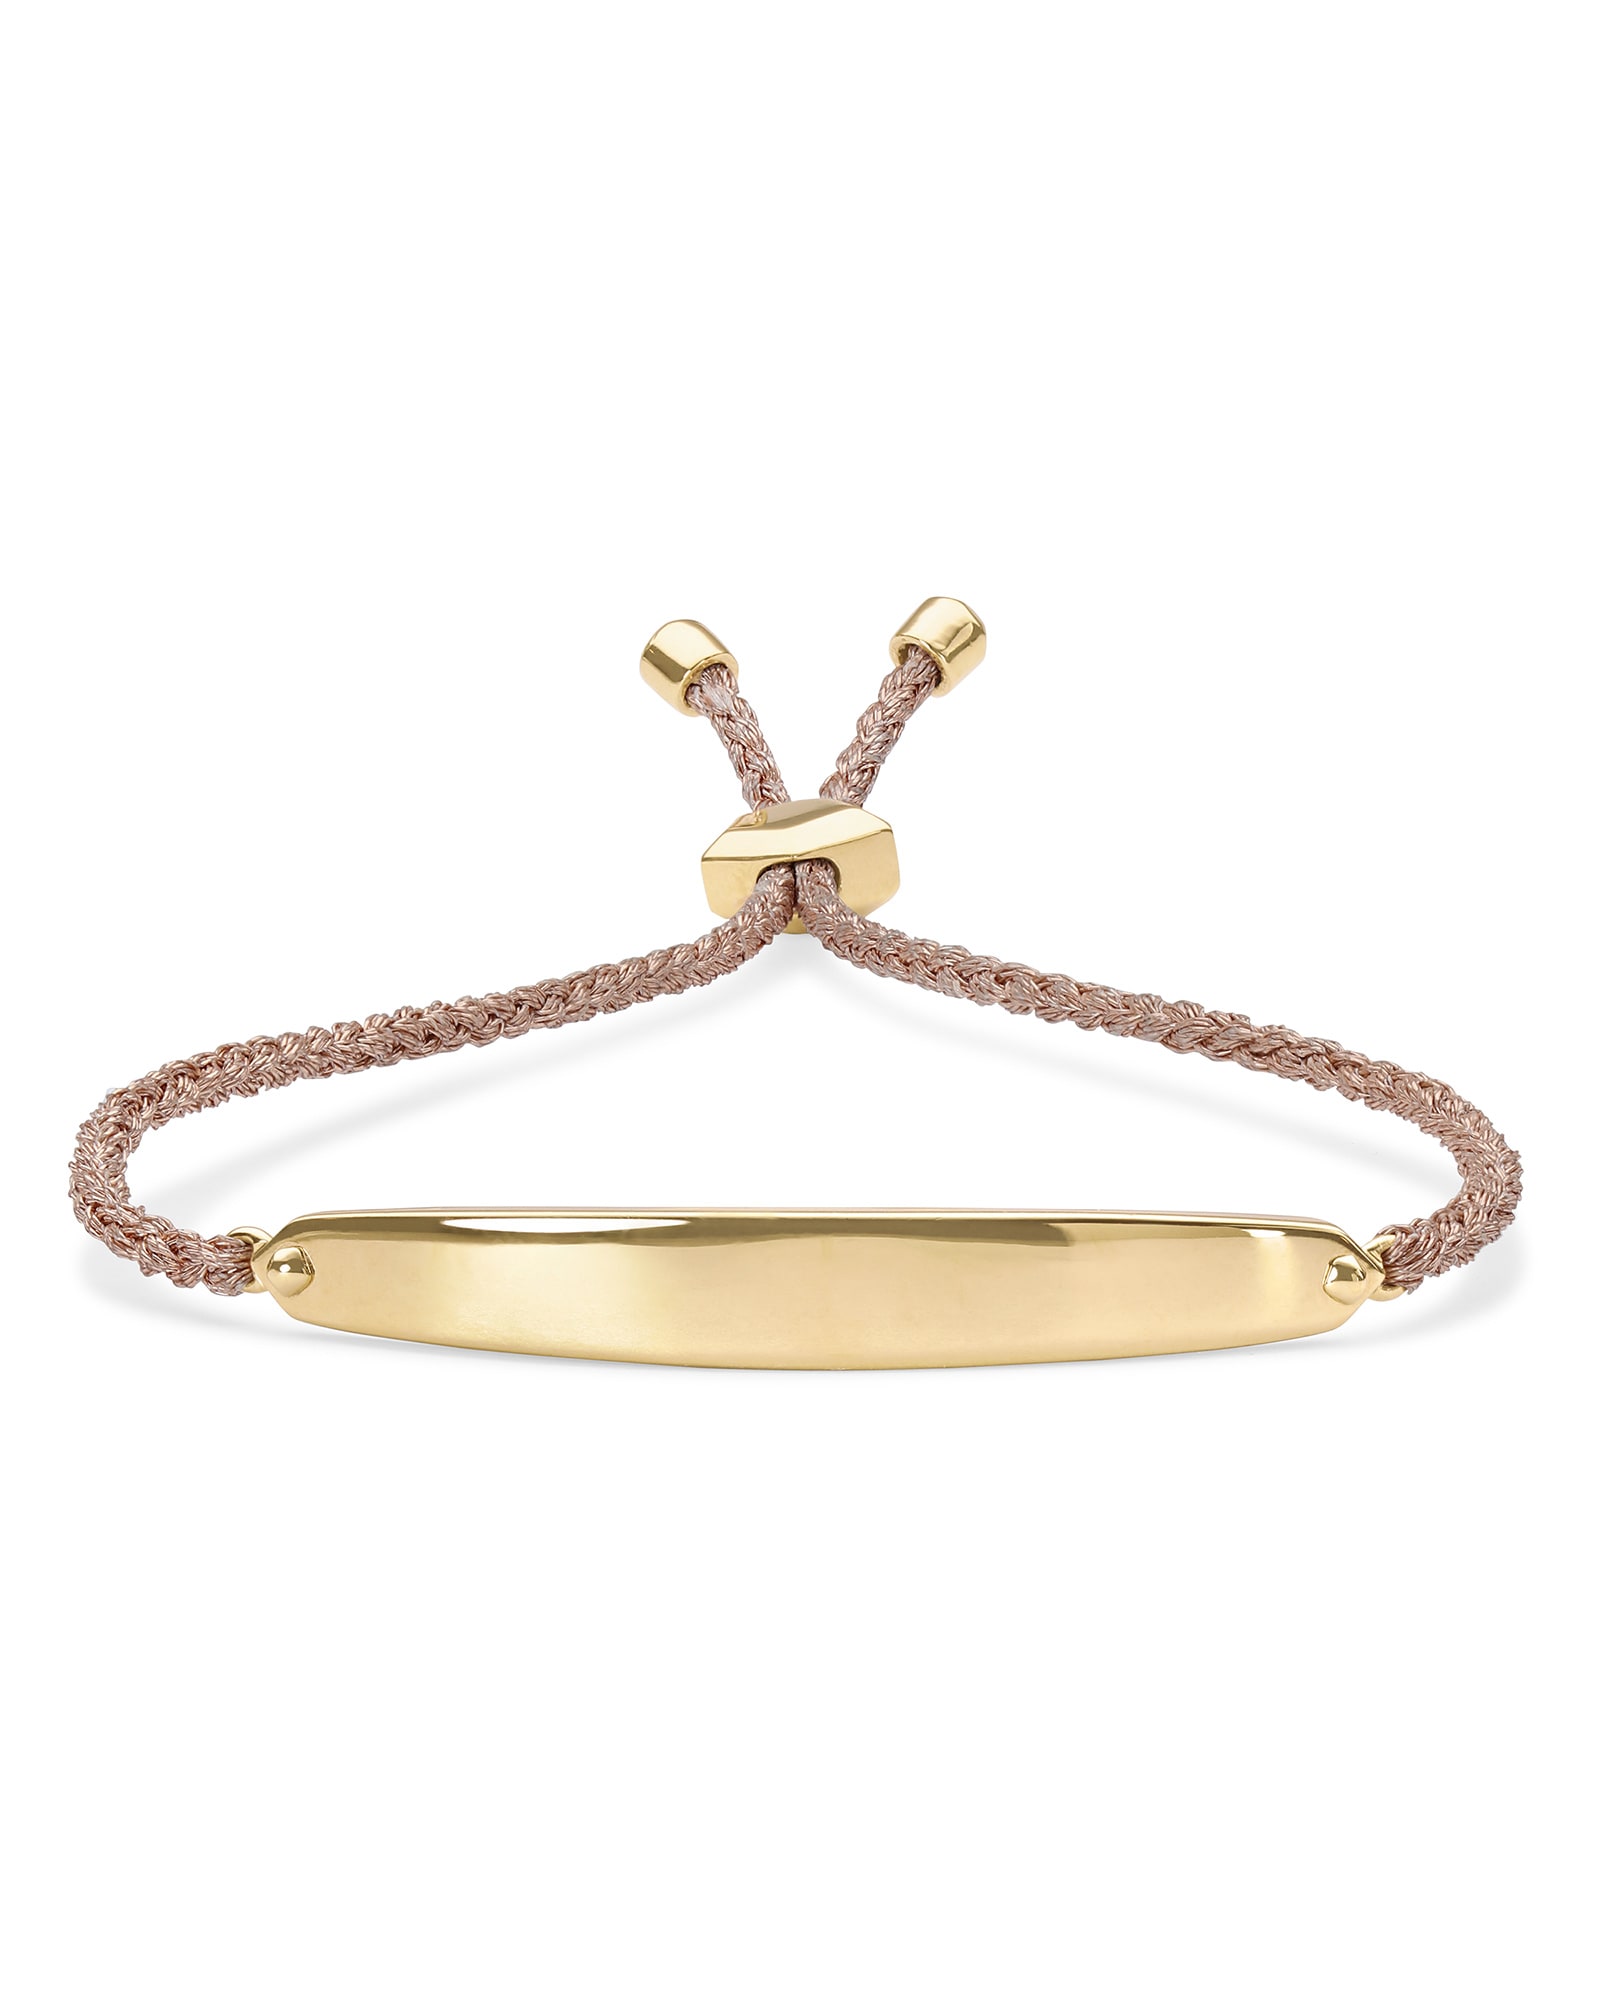 Kendra Scott Mattie Bar Cord Bracelet in 18k Gold Vermeil | Sterling Silver/Nylon